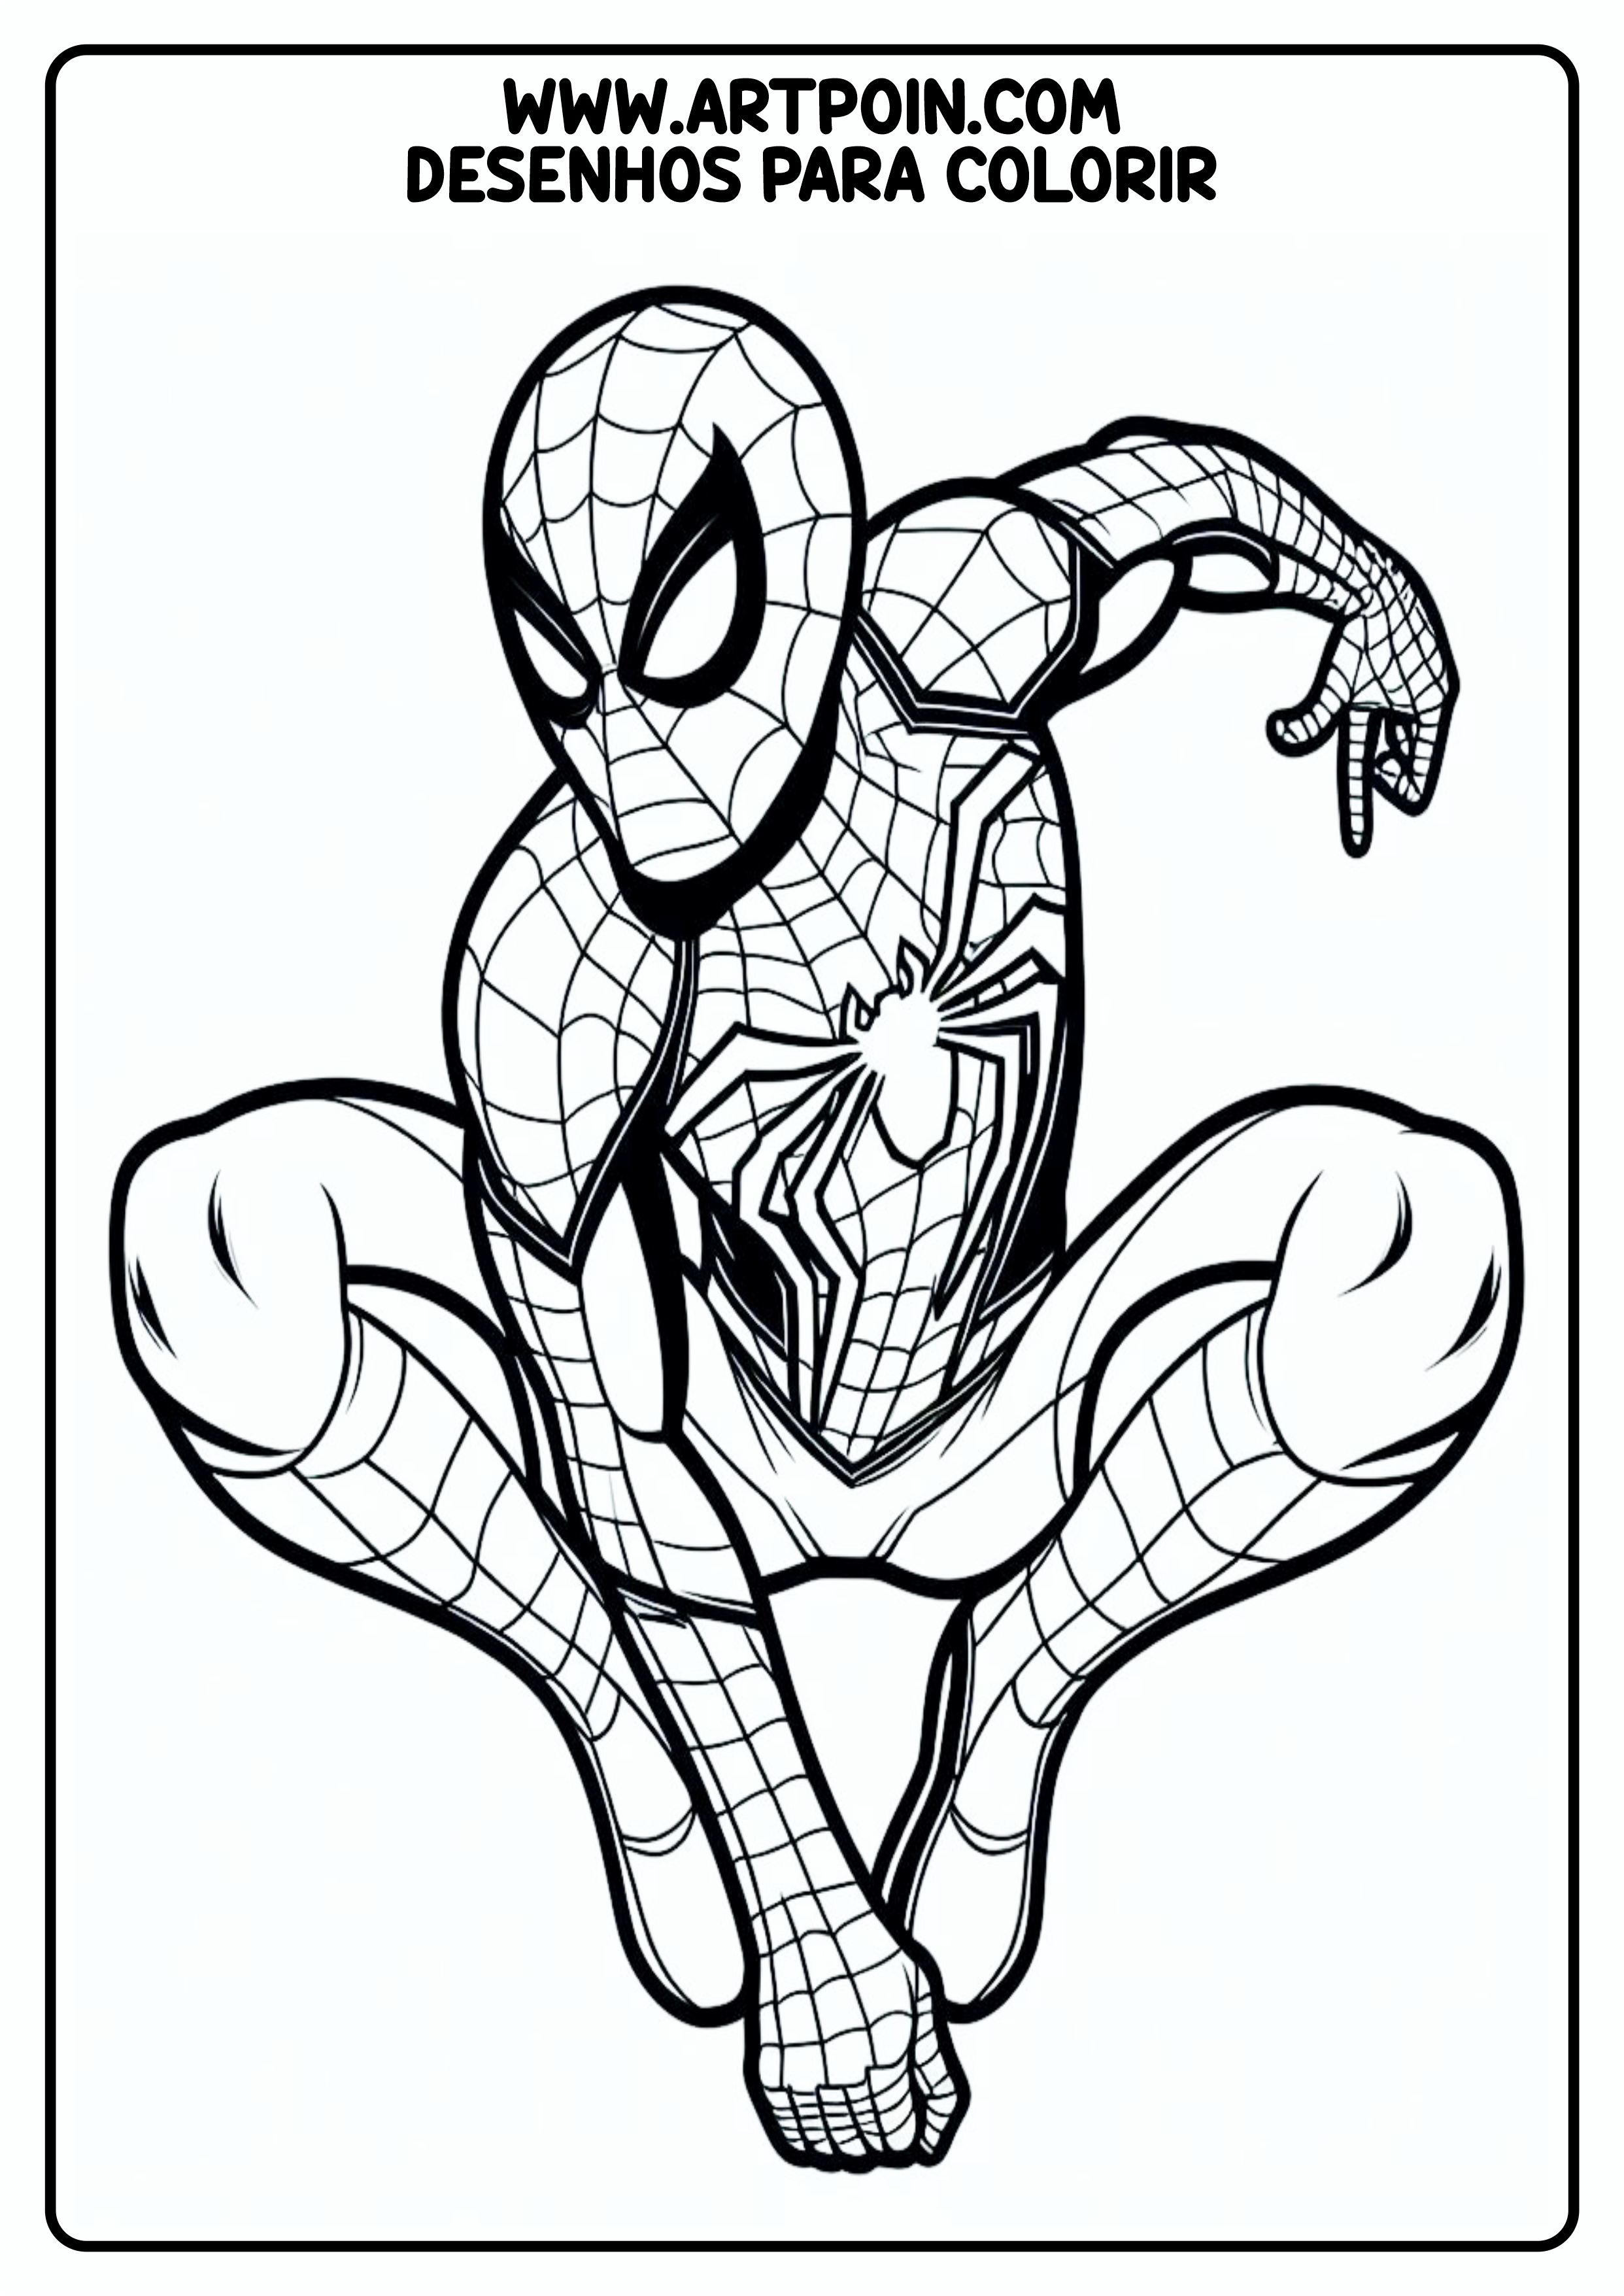 Desenho para colorir homem-aranha super herói Marvel artes gráficas para pintar atividade infantil png